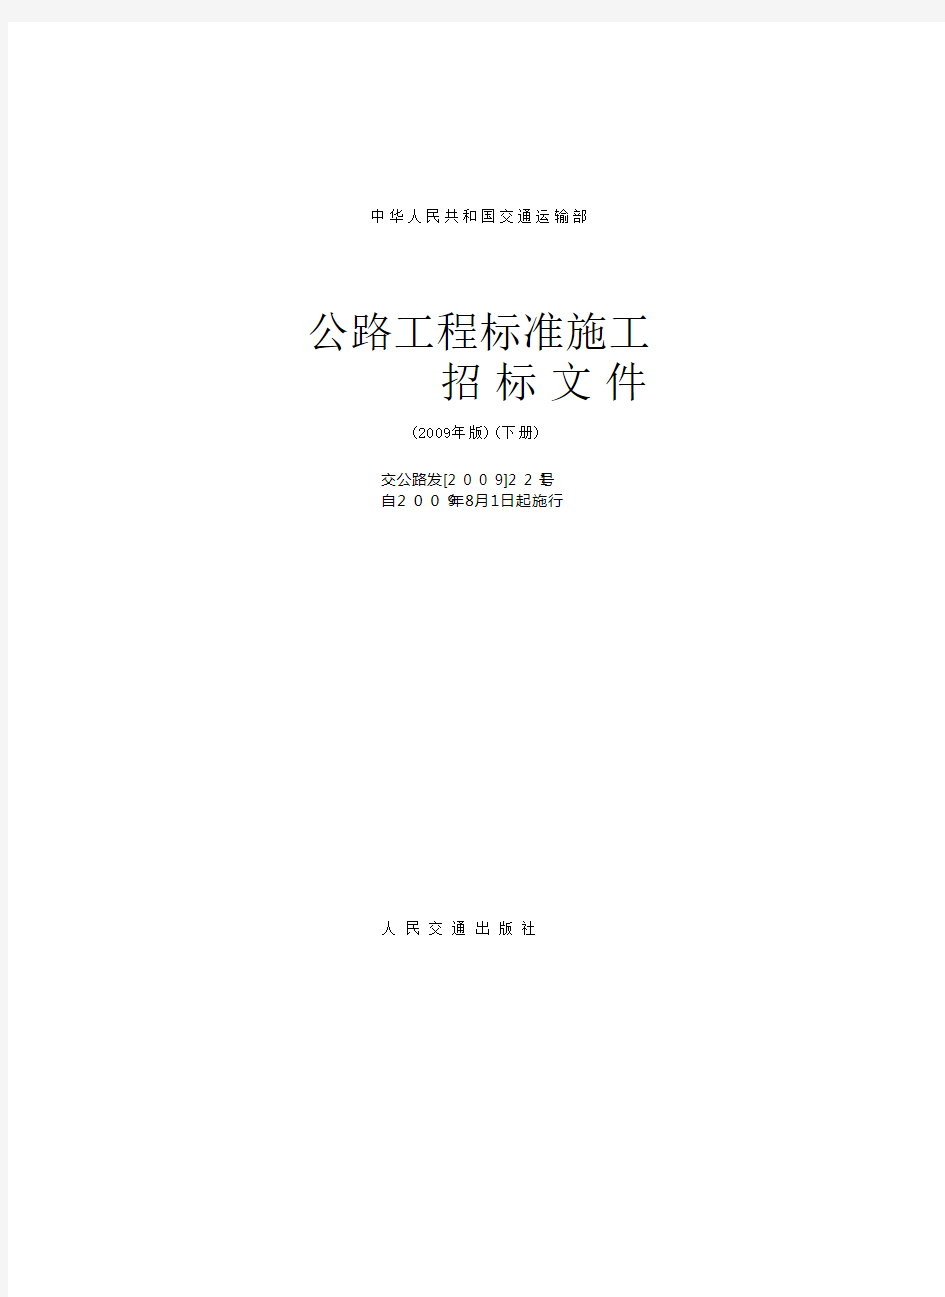 中华人民共和国交通运输部公路工程标准施工招标文件范本 版 下册